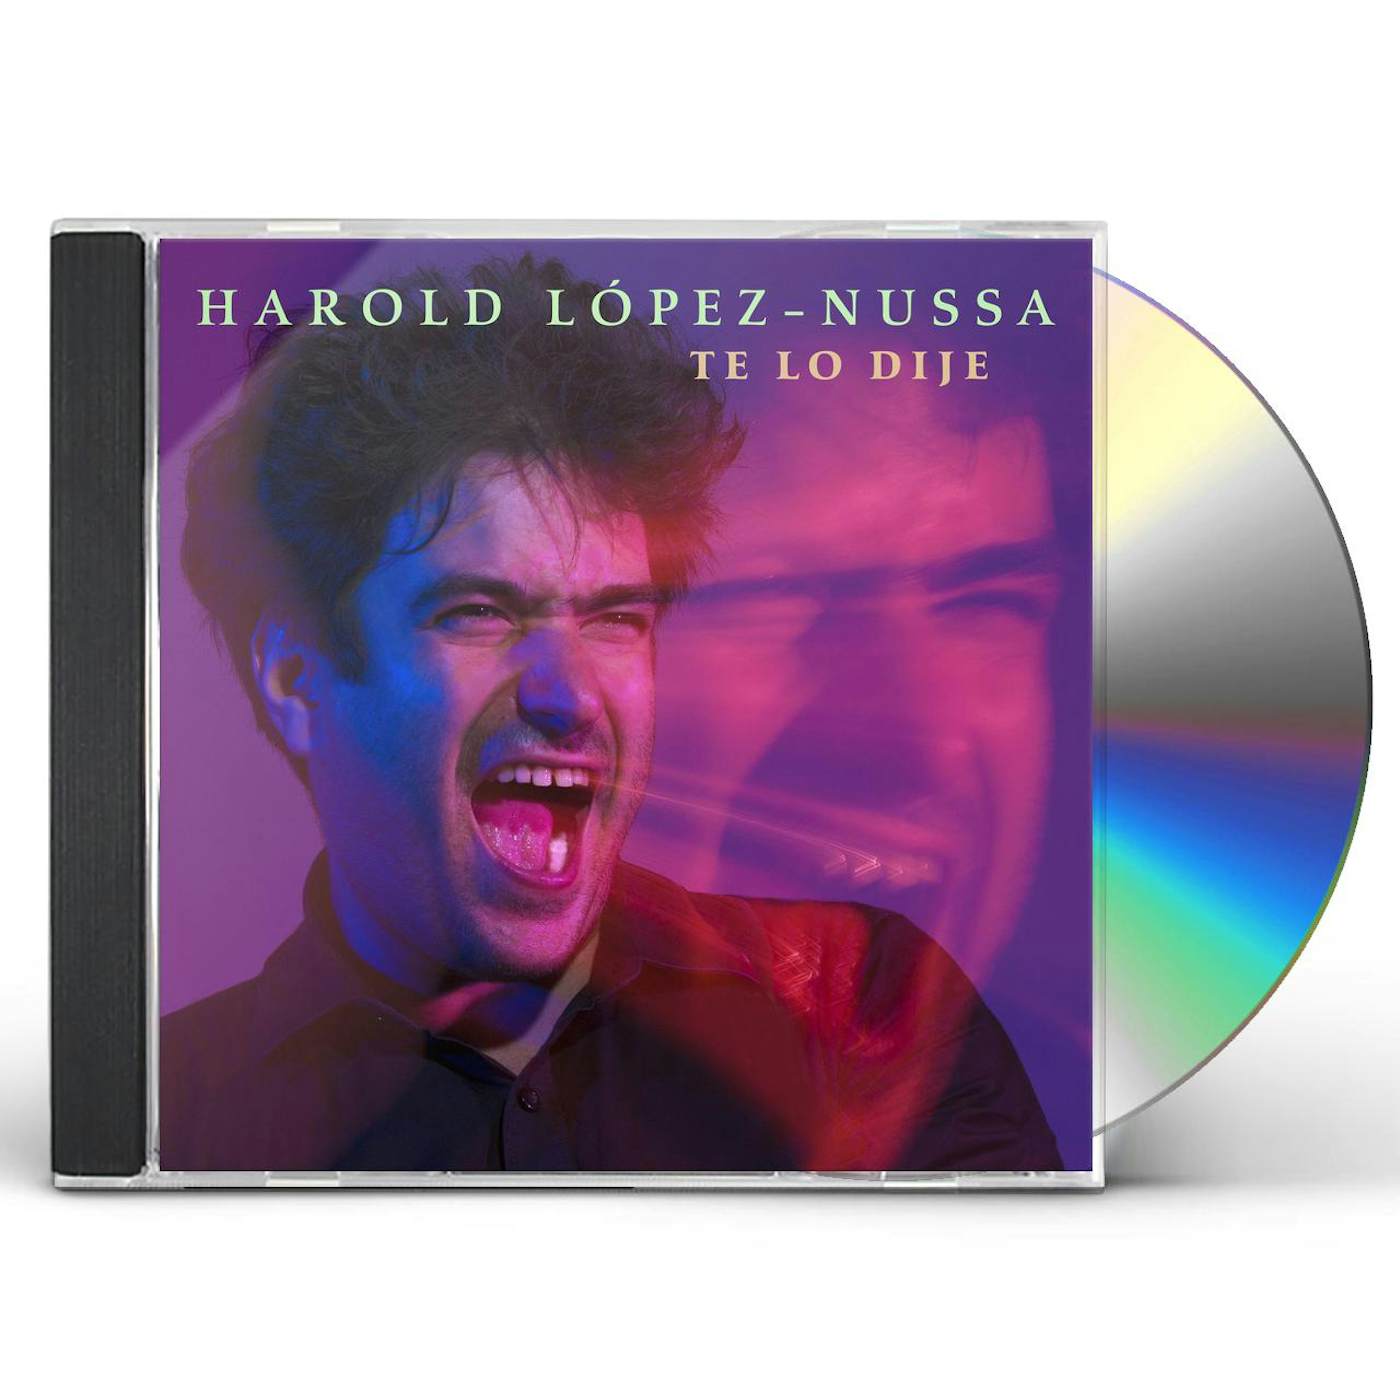 Harold López-Nussa TE LO DIJE CD